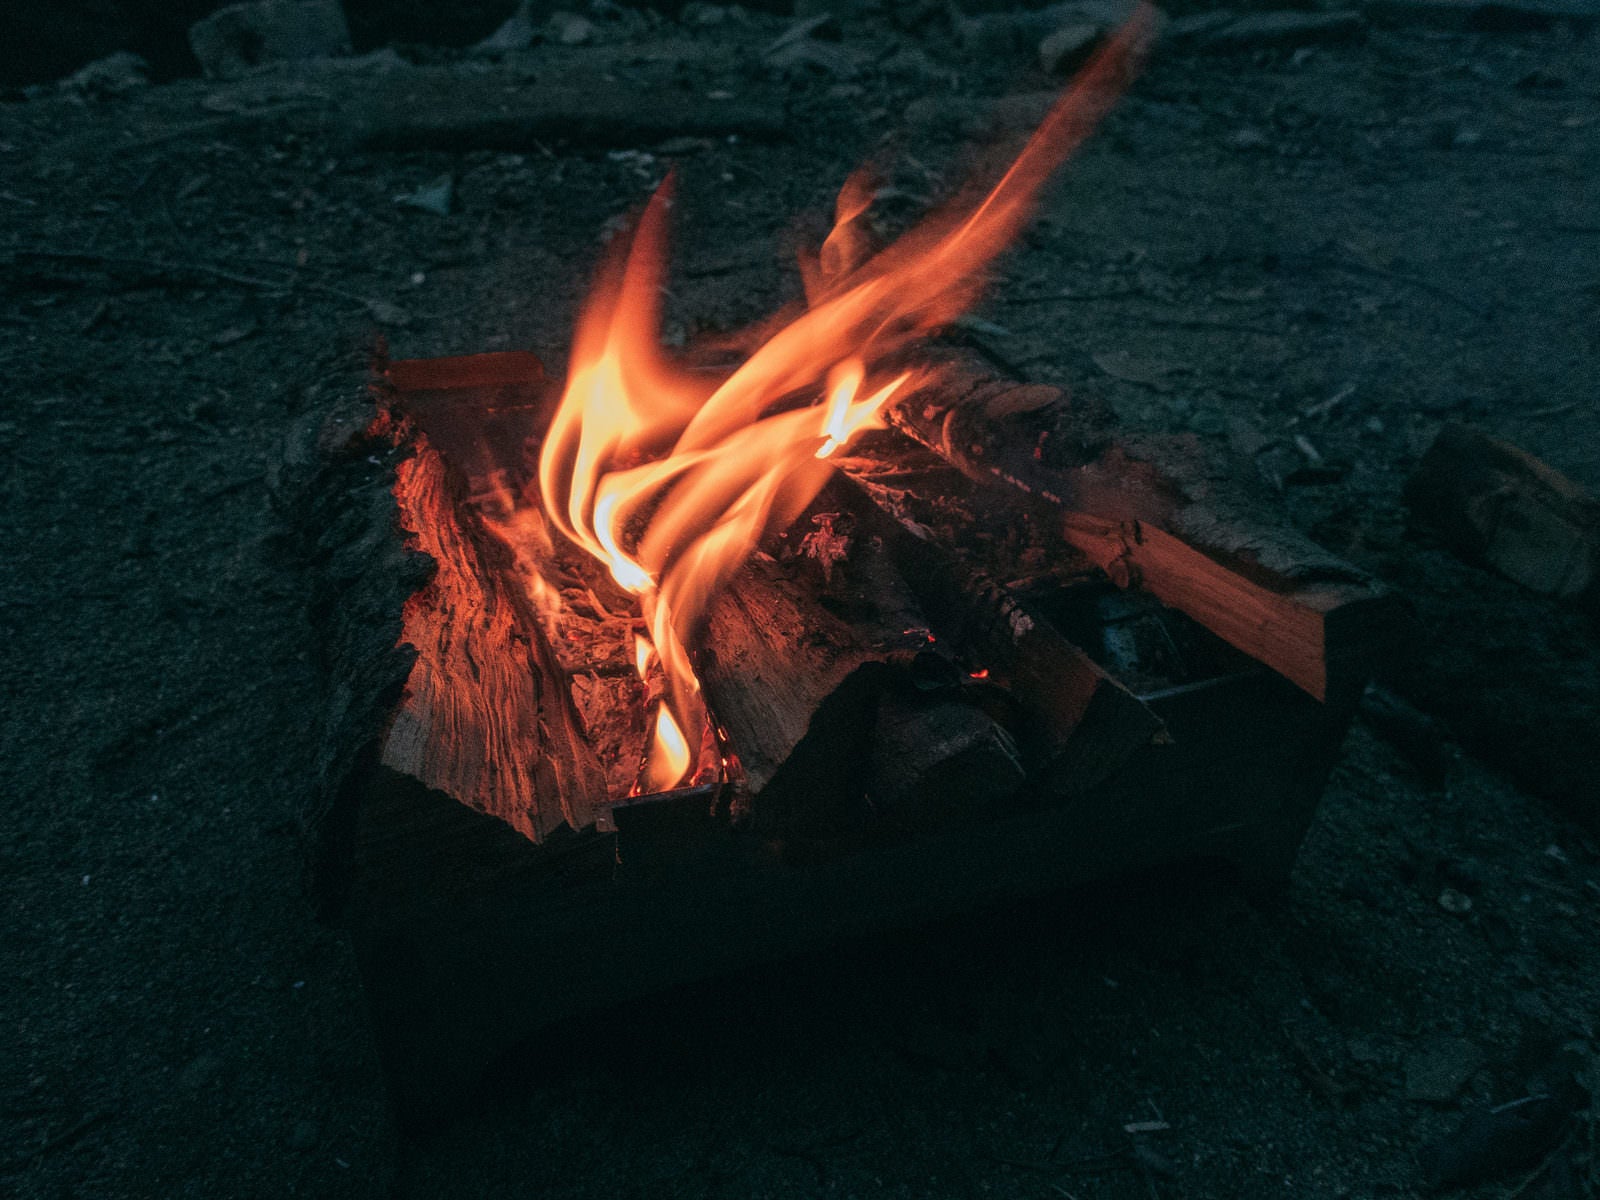 「キャンプ中の焚火の様子」の写真